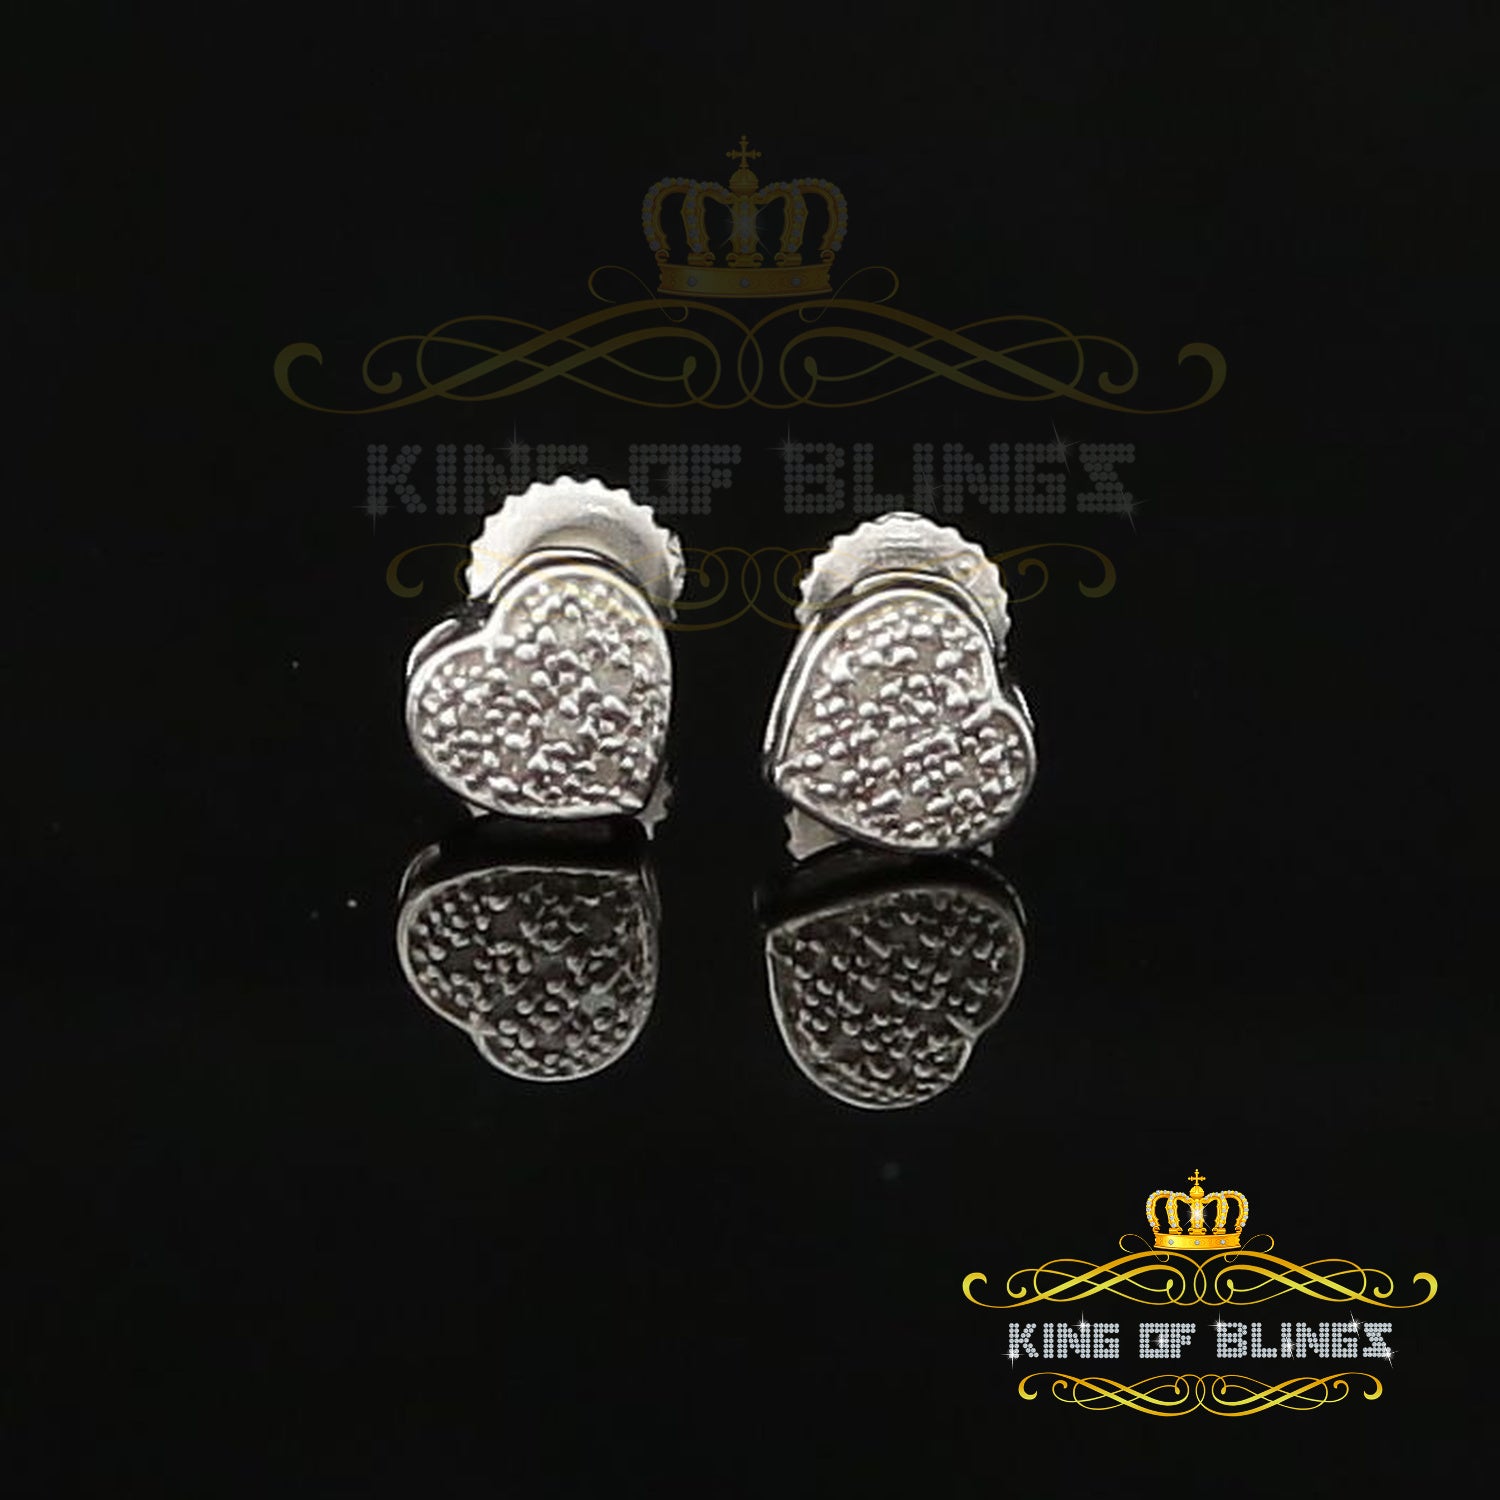 King Of Bling's Aretes Para Hombre Heart 925 White Silver 0.05ct Diamond Women's /Men's Earring KING OF BLINGS